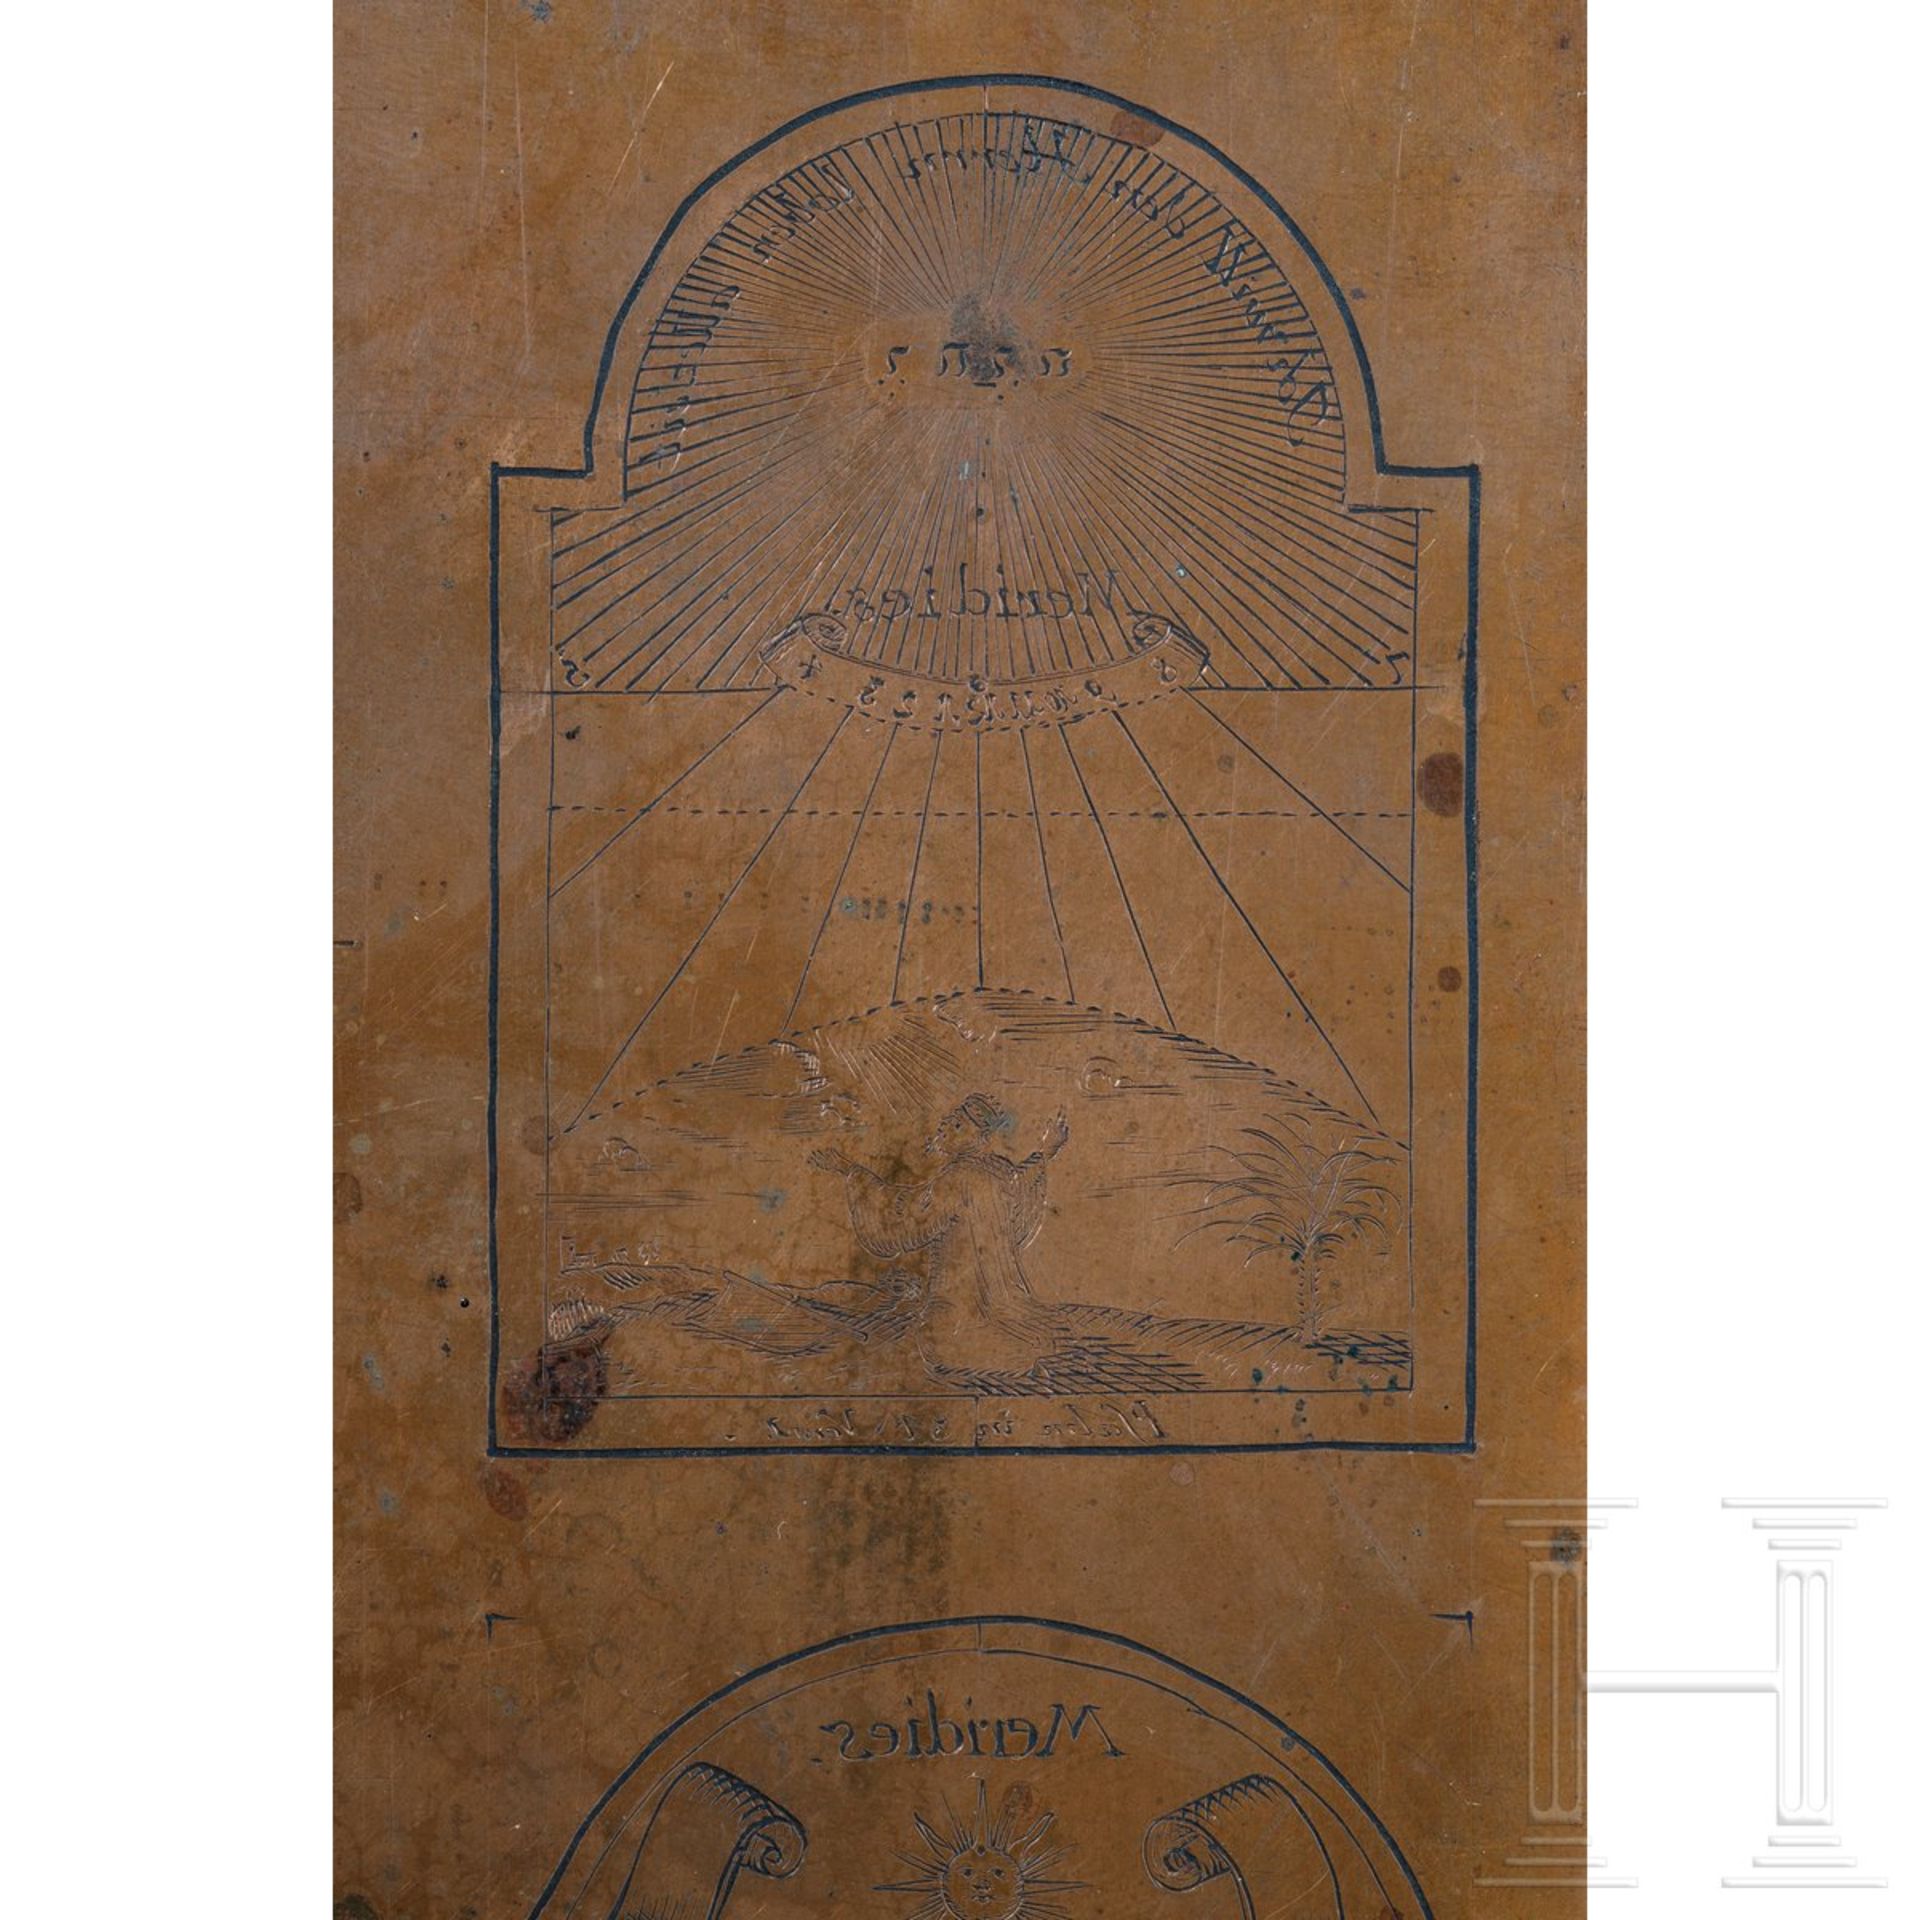 Kupferstichplatte für Sonnenuhrskalen, Schwaben, datiert 1744 - Bild 3 aus 3